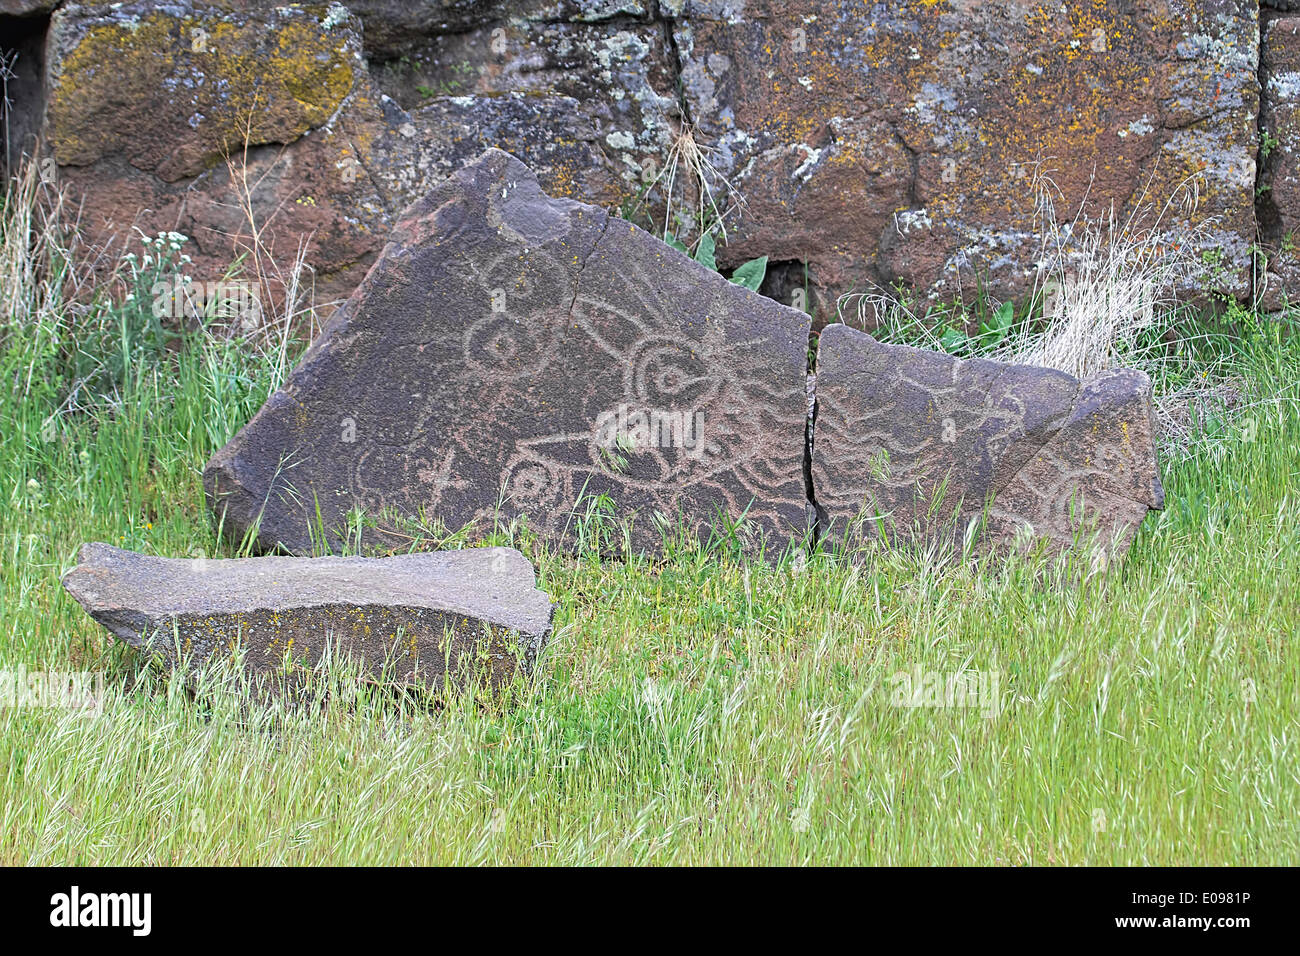 Native Anerican Indians Mythical Animals Petrogylph on Rock Artwork at Horsethief Lake Washington Stock Photo